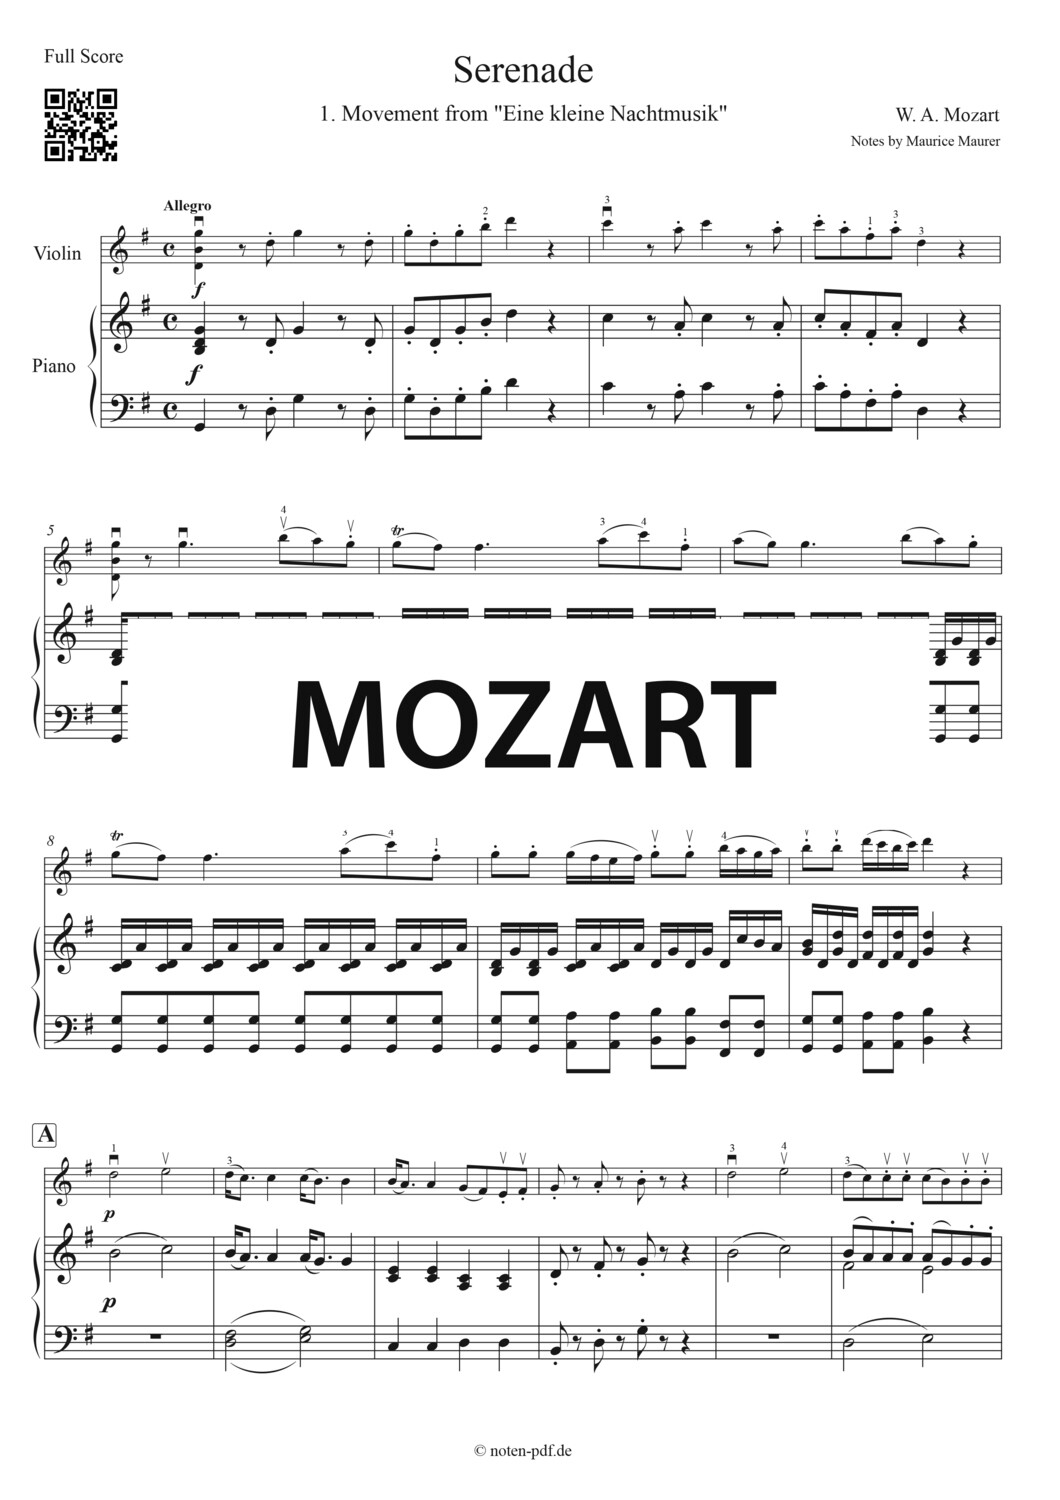 Mozart: Serenade from "Eine kleine Nachtmusik" + MP3